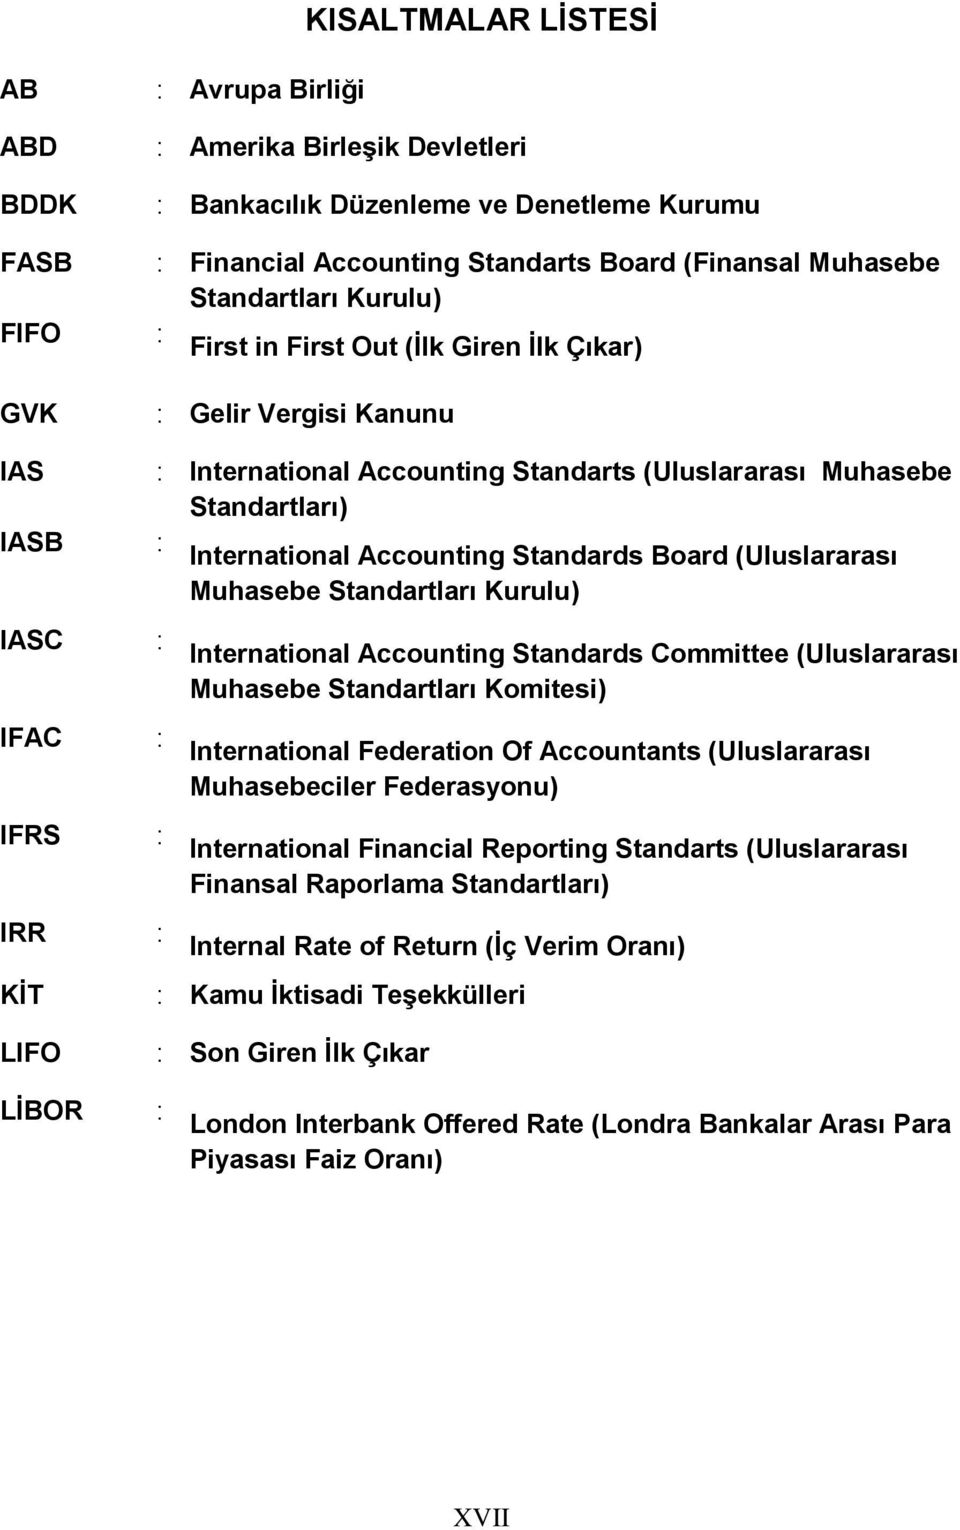 Standards Board (Uluslararası Muhasebe Standartları Kurulu) IASC : IFAC : IFRS : IRR : International Accounting Standards Committee (Uluslararası Muhasebe Standartları Komitesi) International